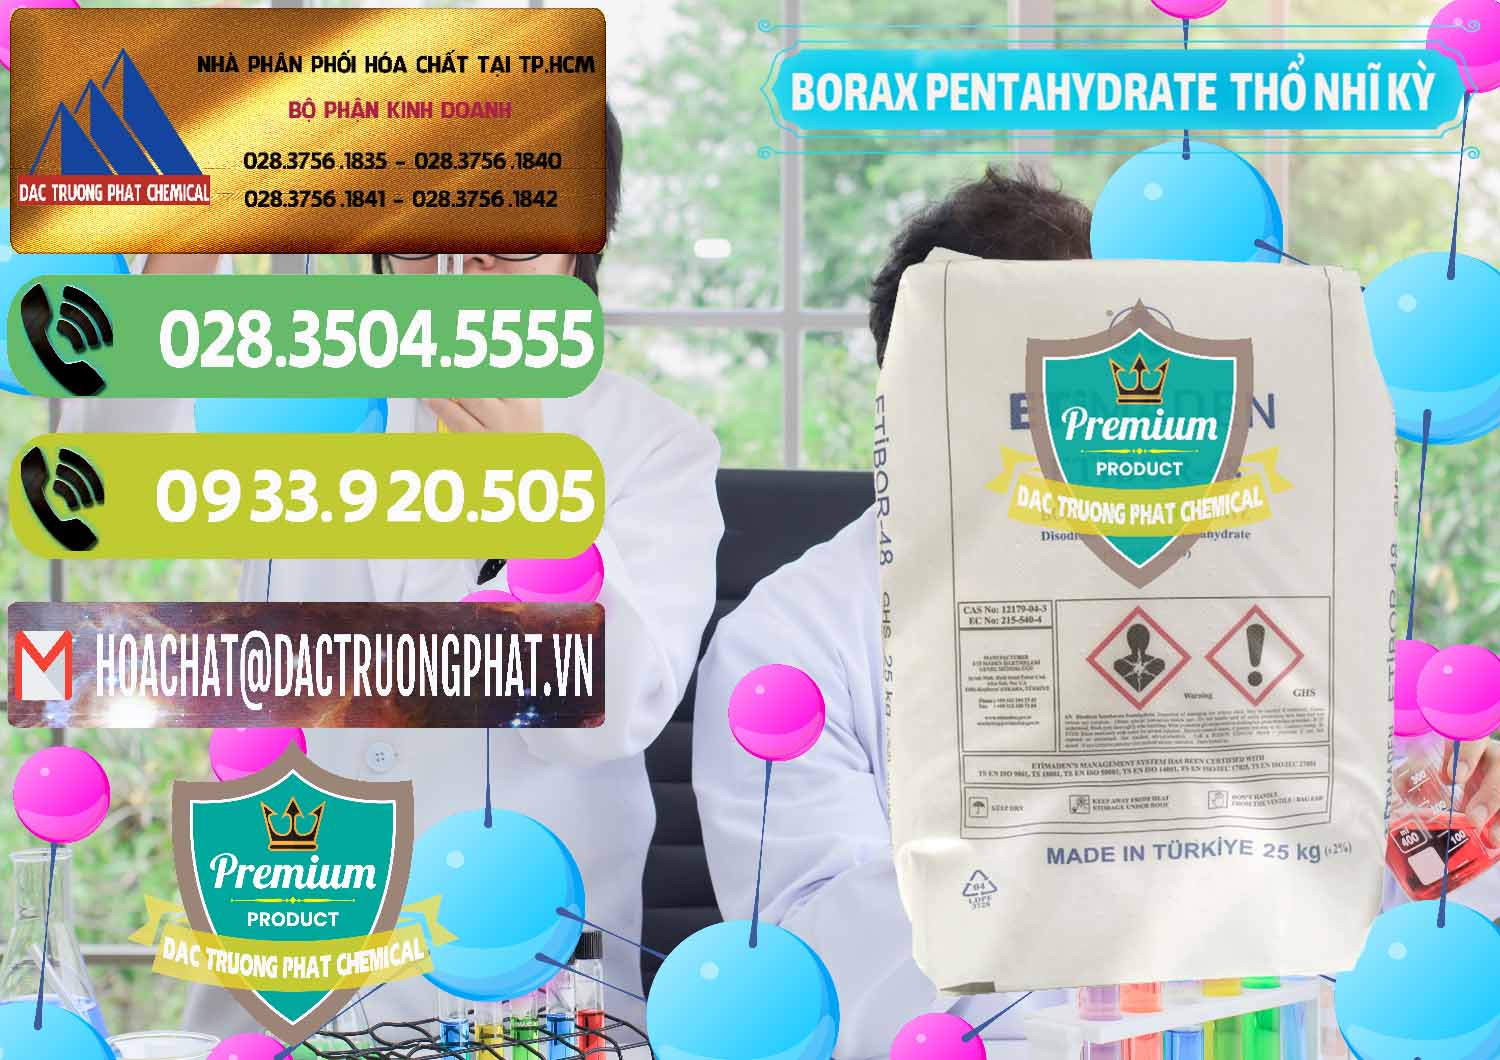 Cty cung ứng ( bán ) Borax Pentahydrate Thổ Nhĩ Kỳ Turkey - 0431 - Nhà cung ứng ( phân phối ) hóa chất tại TP.HCM - hoachatmientay.vn